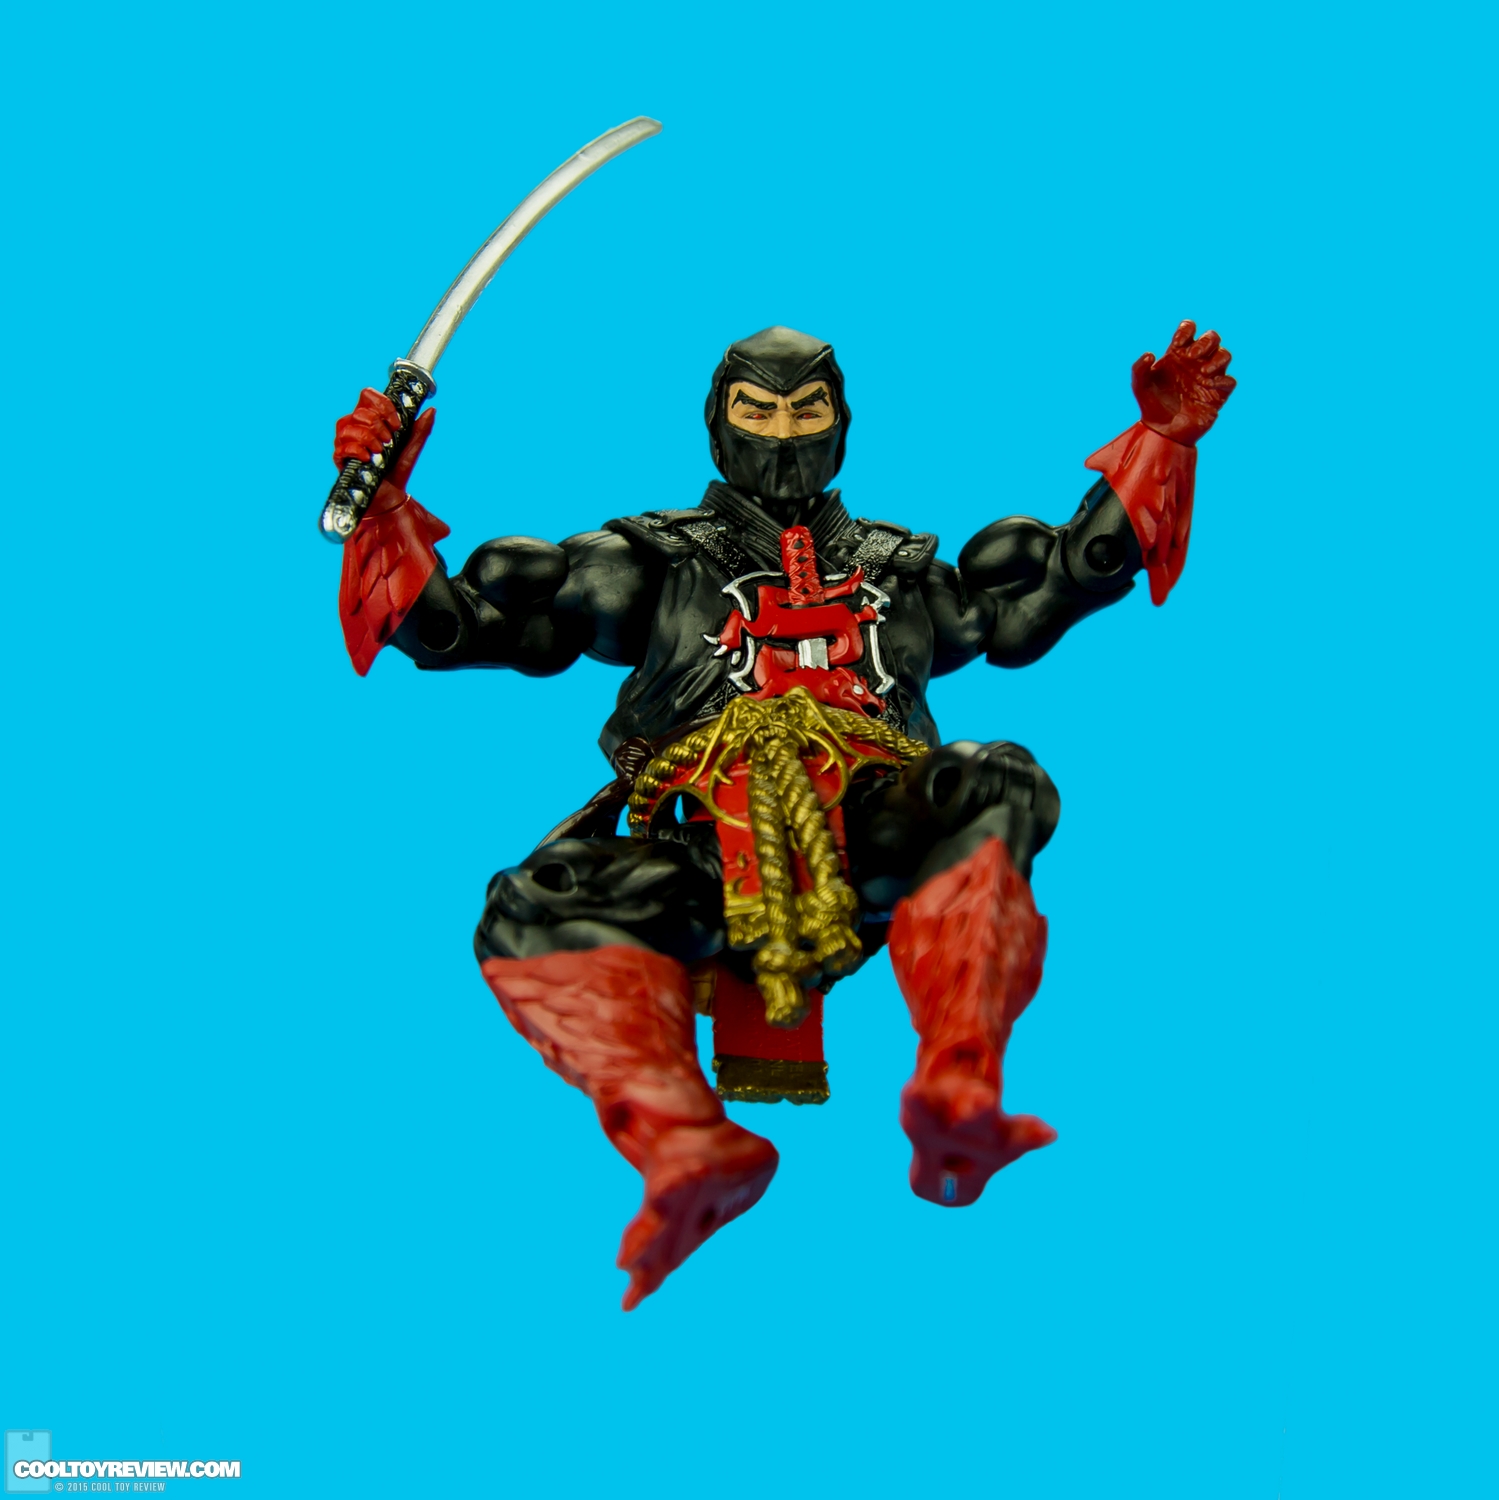 Mattel-MOTUC-Ninja-Warrior-010.jpg